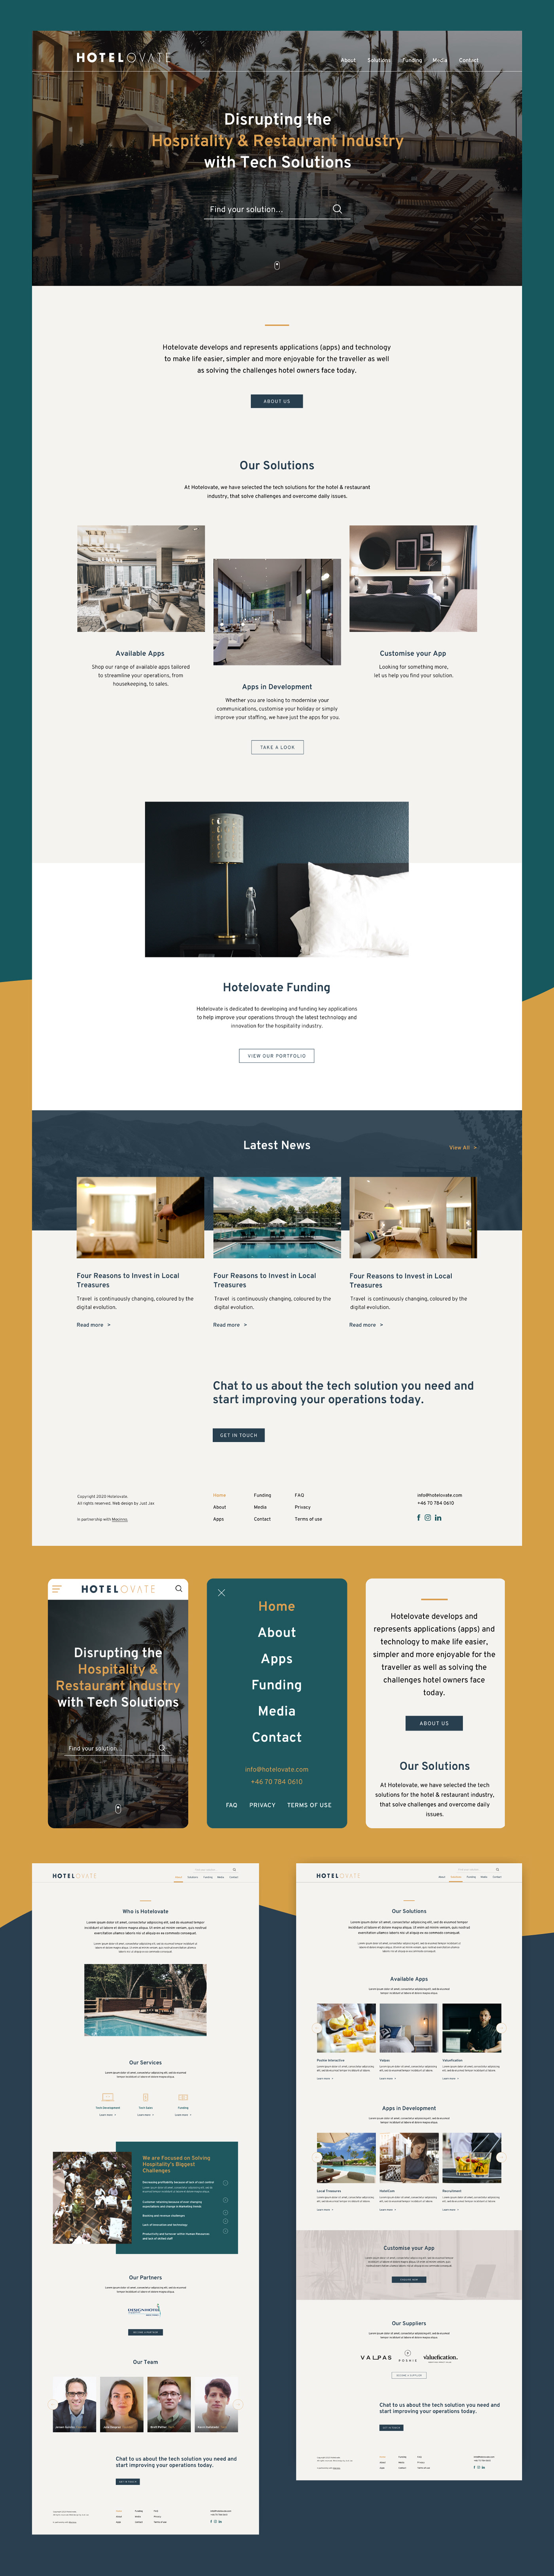 apps design digital hotel mobile Responsive UI UI/UX Web Design  Website Design